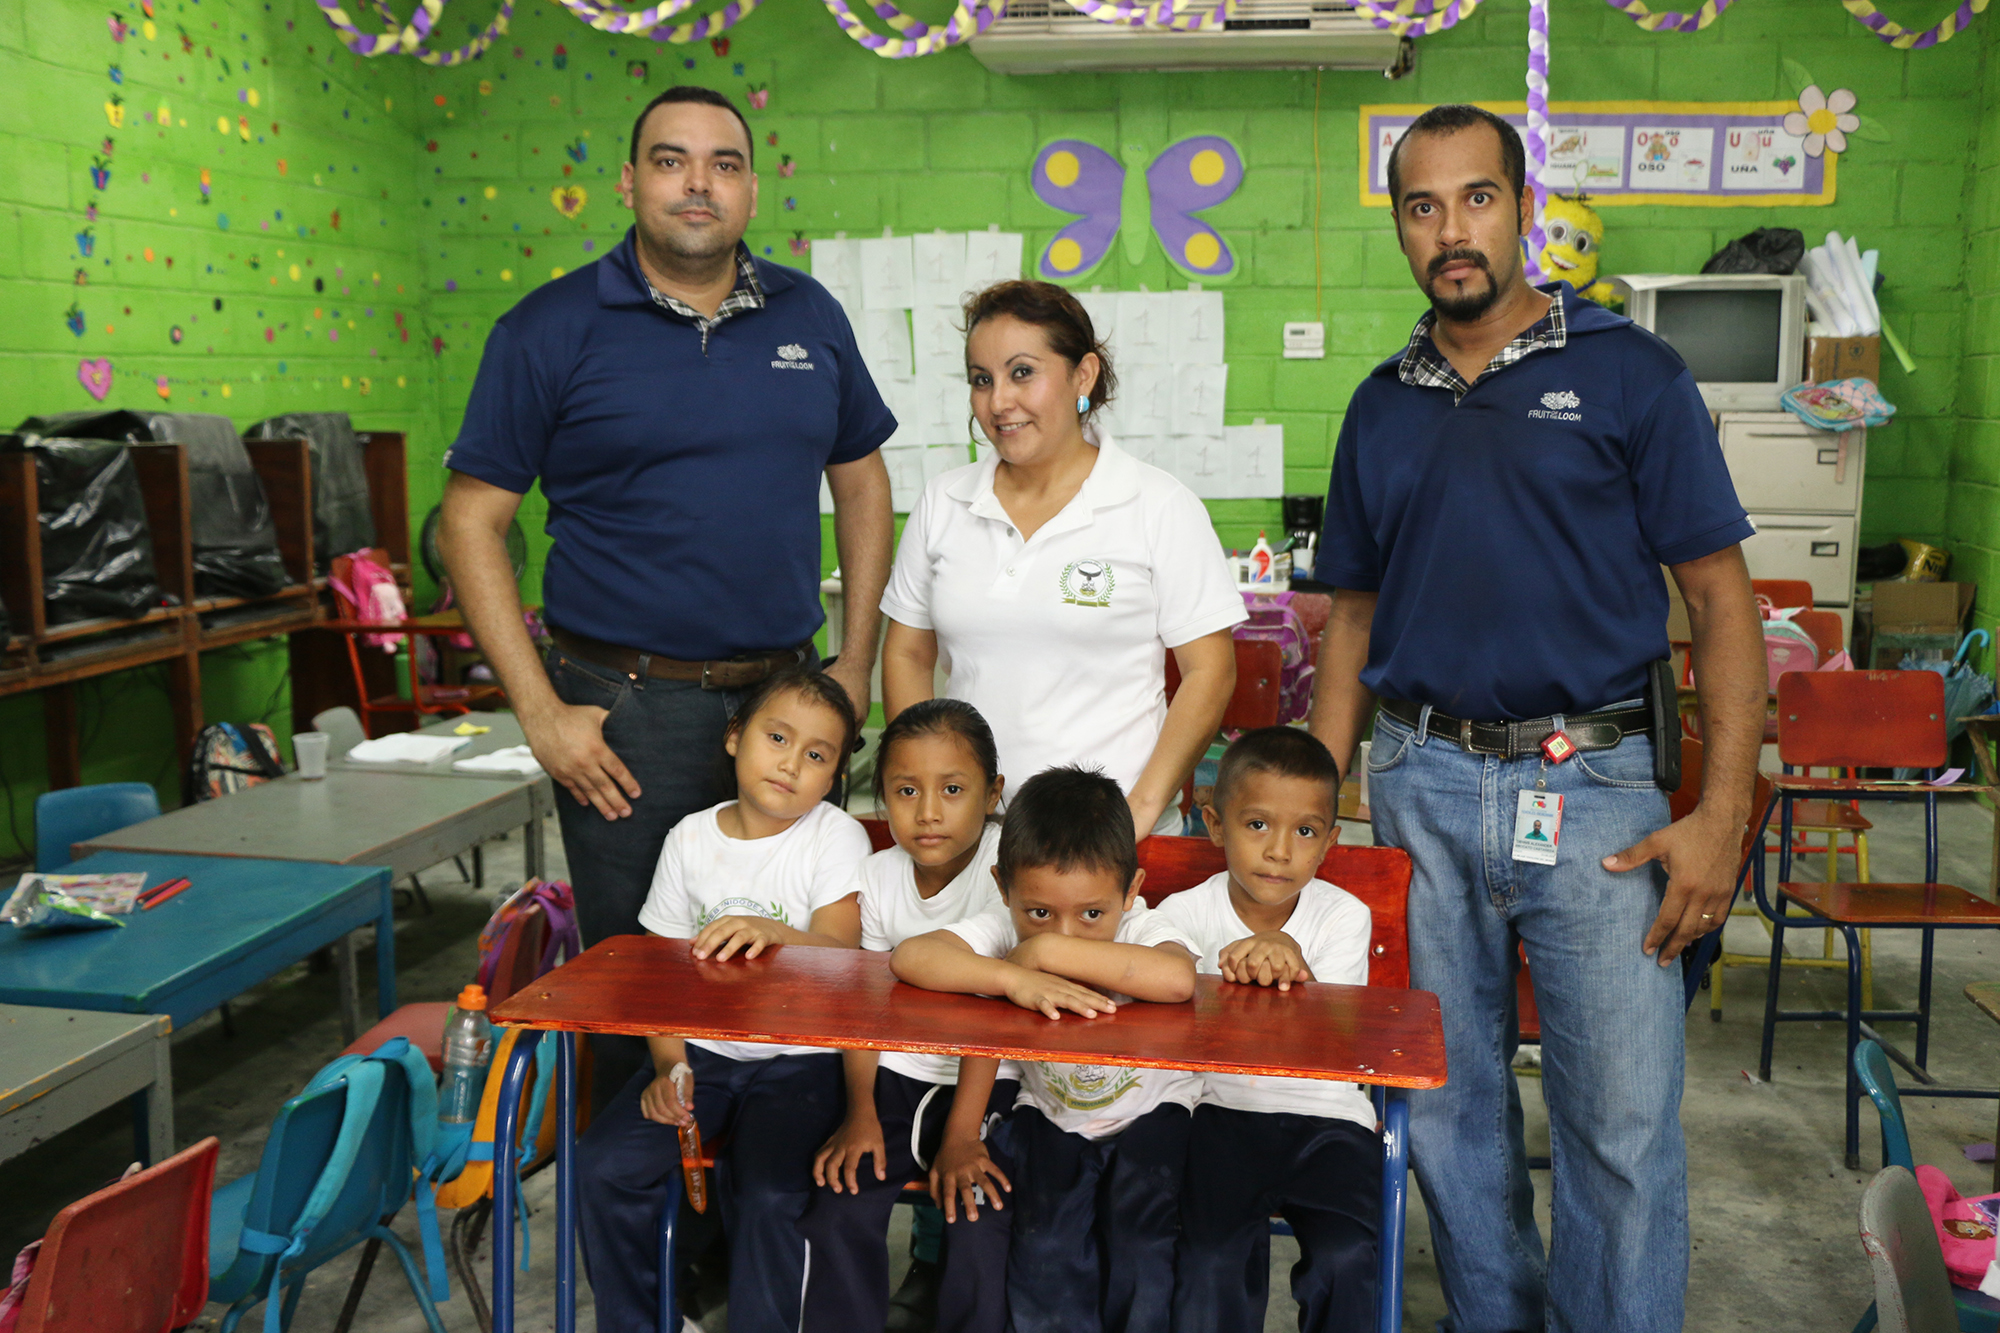 RLA Manufacturing fabrica pupitres y los dona a escuela República de Honduras